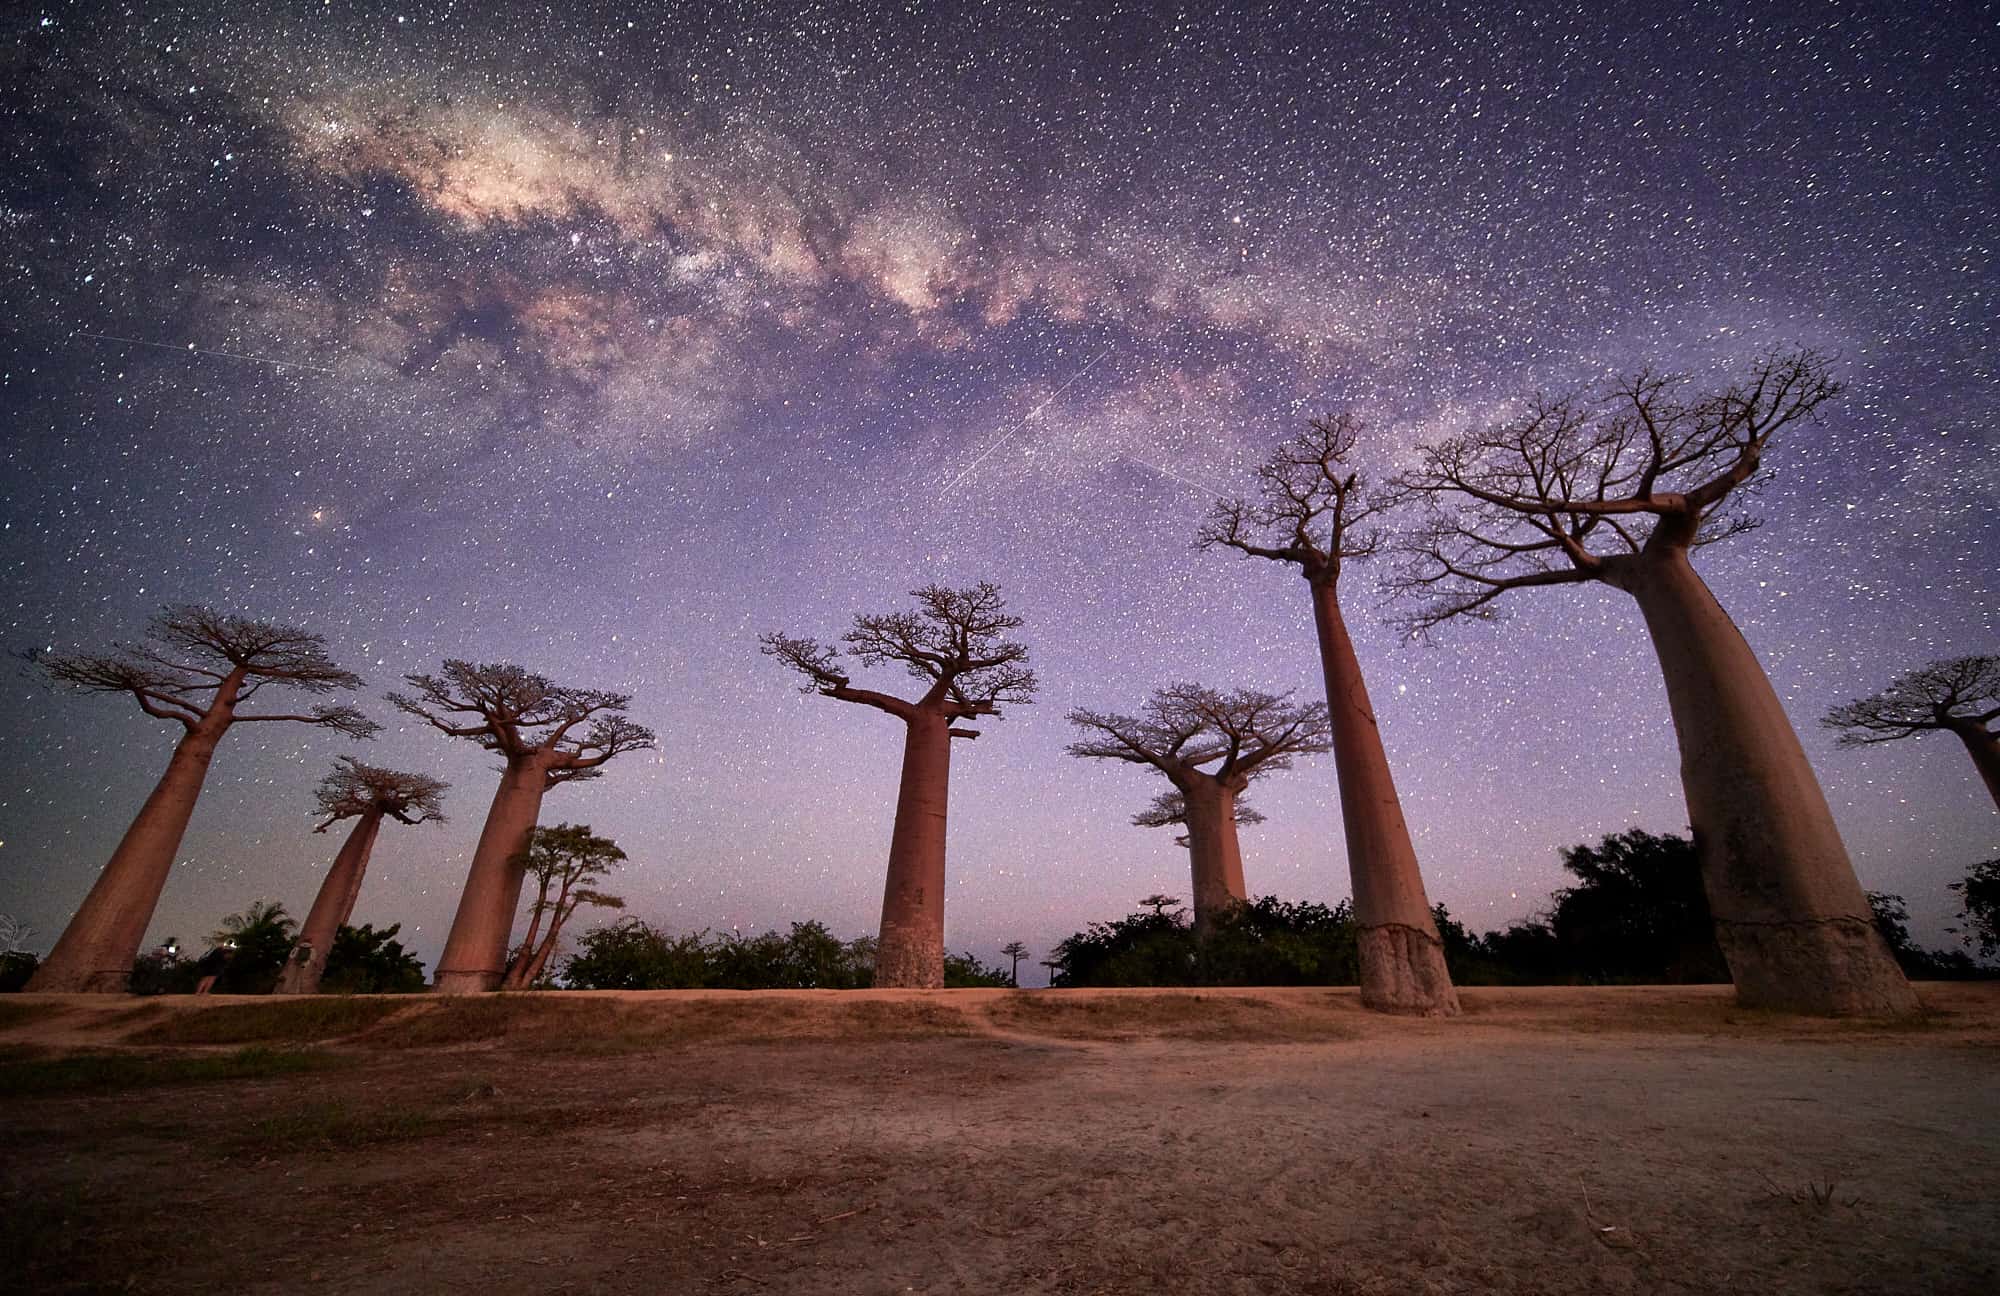 1806 02 Allee de Baobab 016 EvM - Madagascar: 5 Landscape Photography Highlights